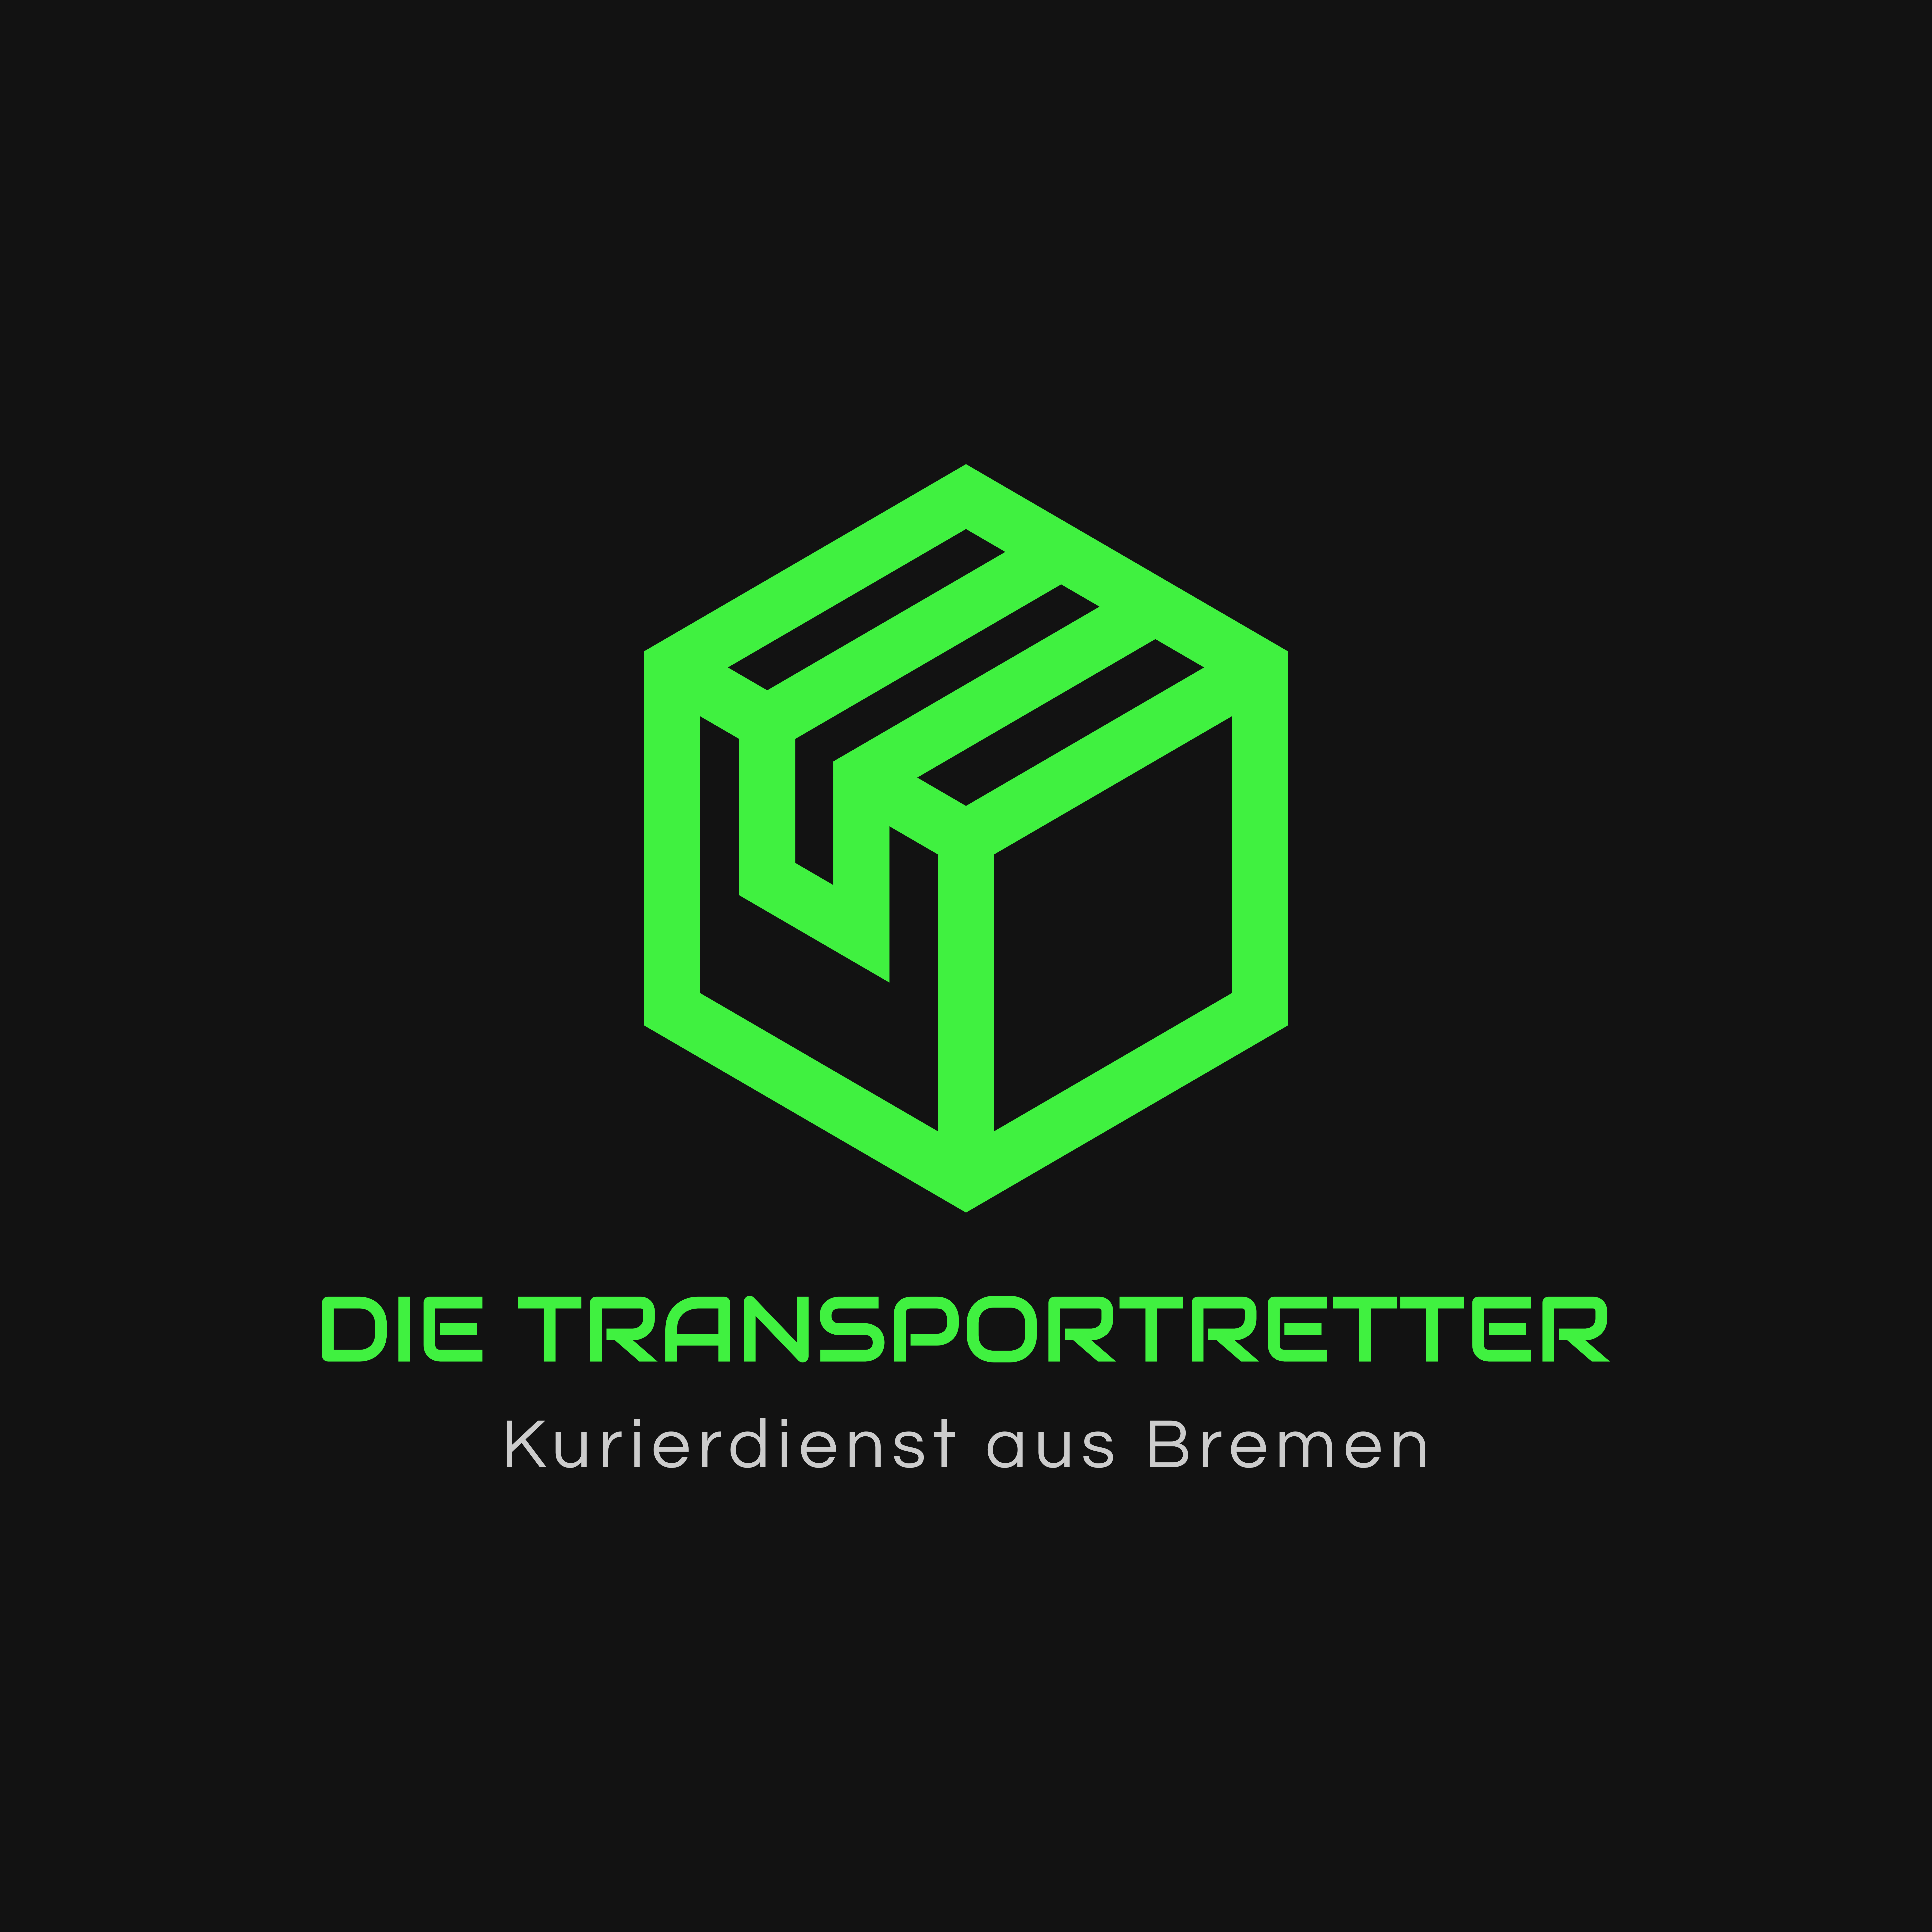 Logo Die Transportretter, Kurierdienst aus Bremen.